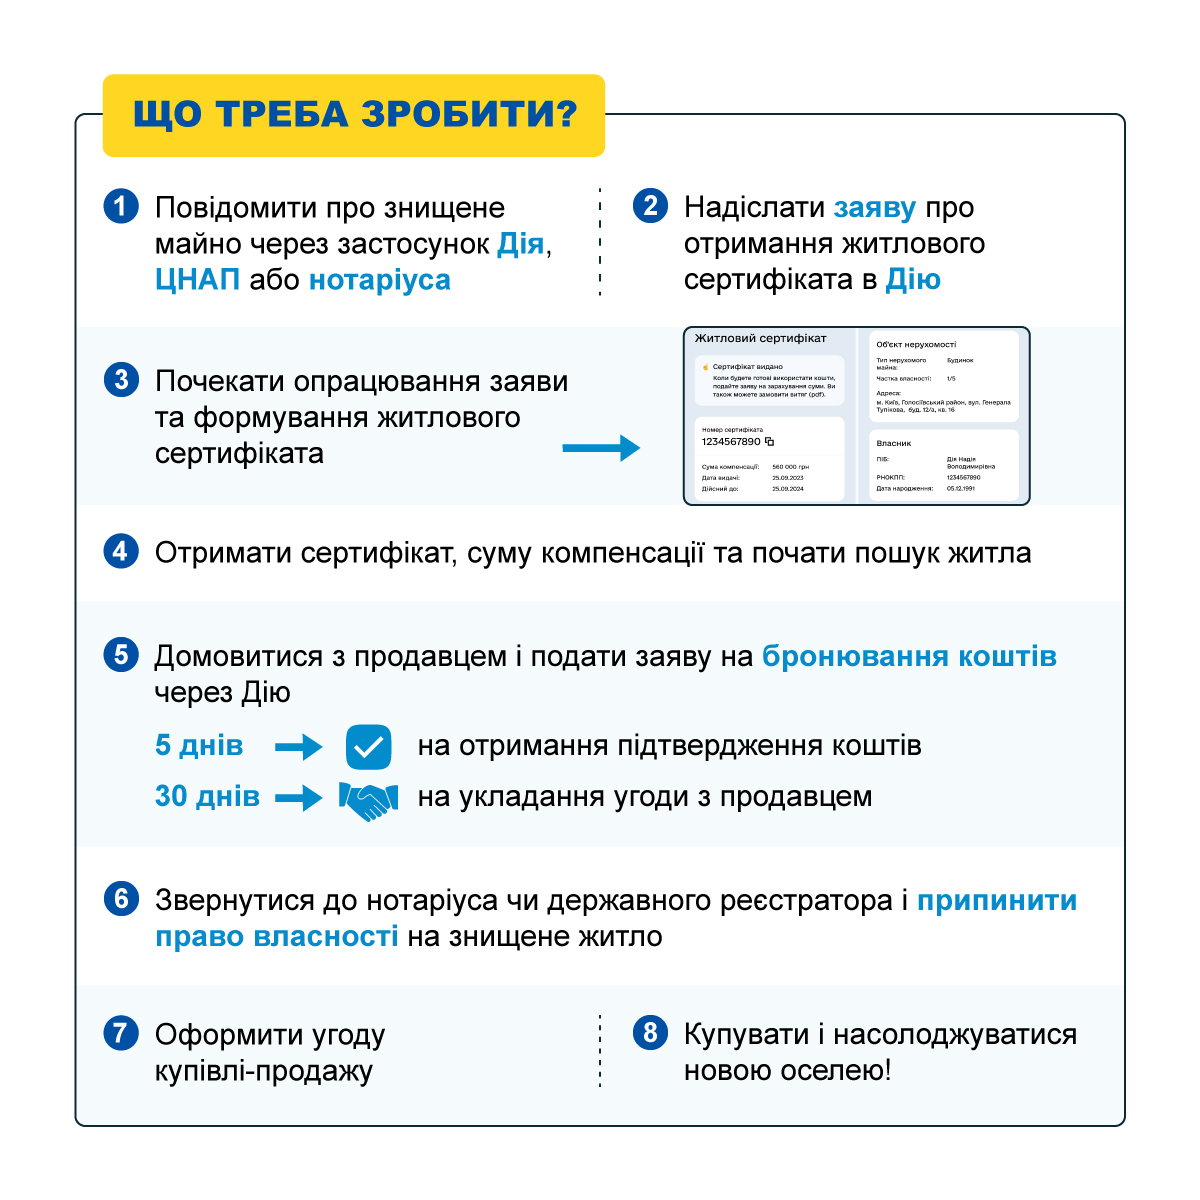 Инфографика: Министерство развития общин, территорий и инфраструктуры Украины